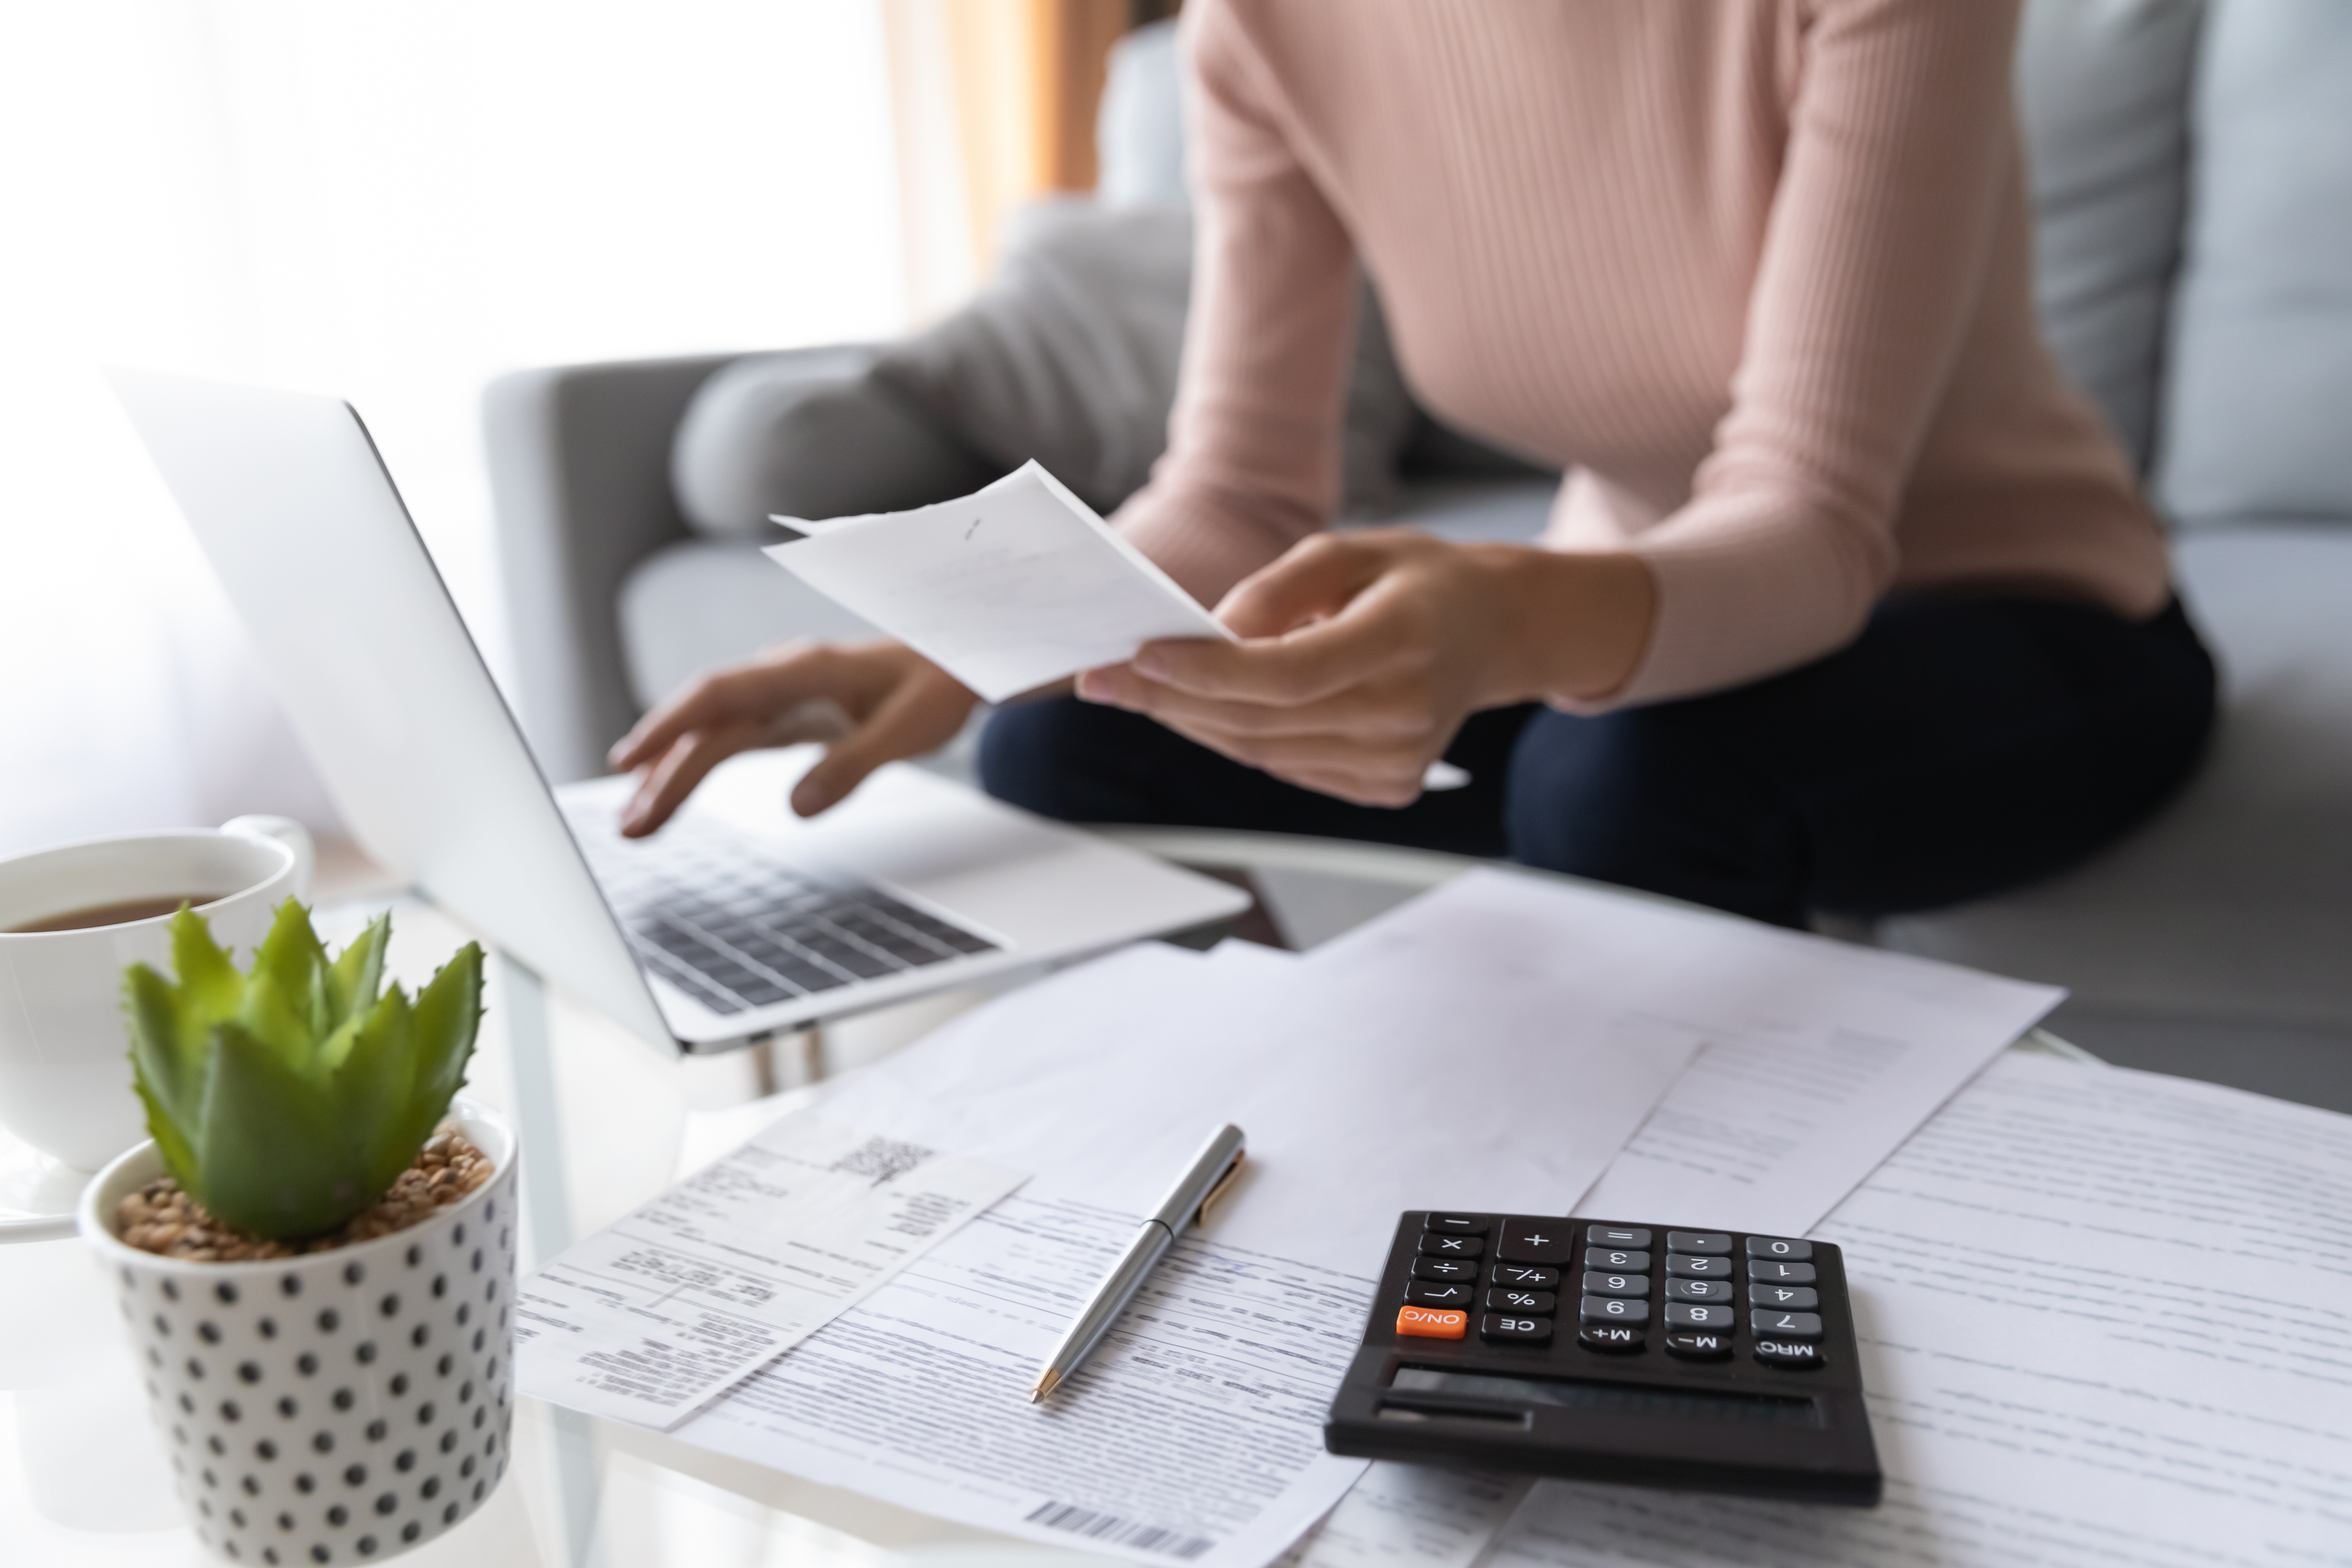 Une femme qui calcule ses finances | Source : Shutterstock